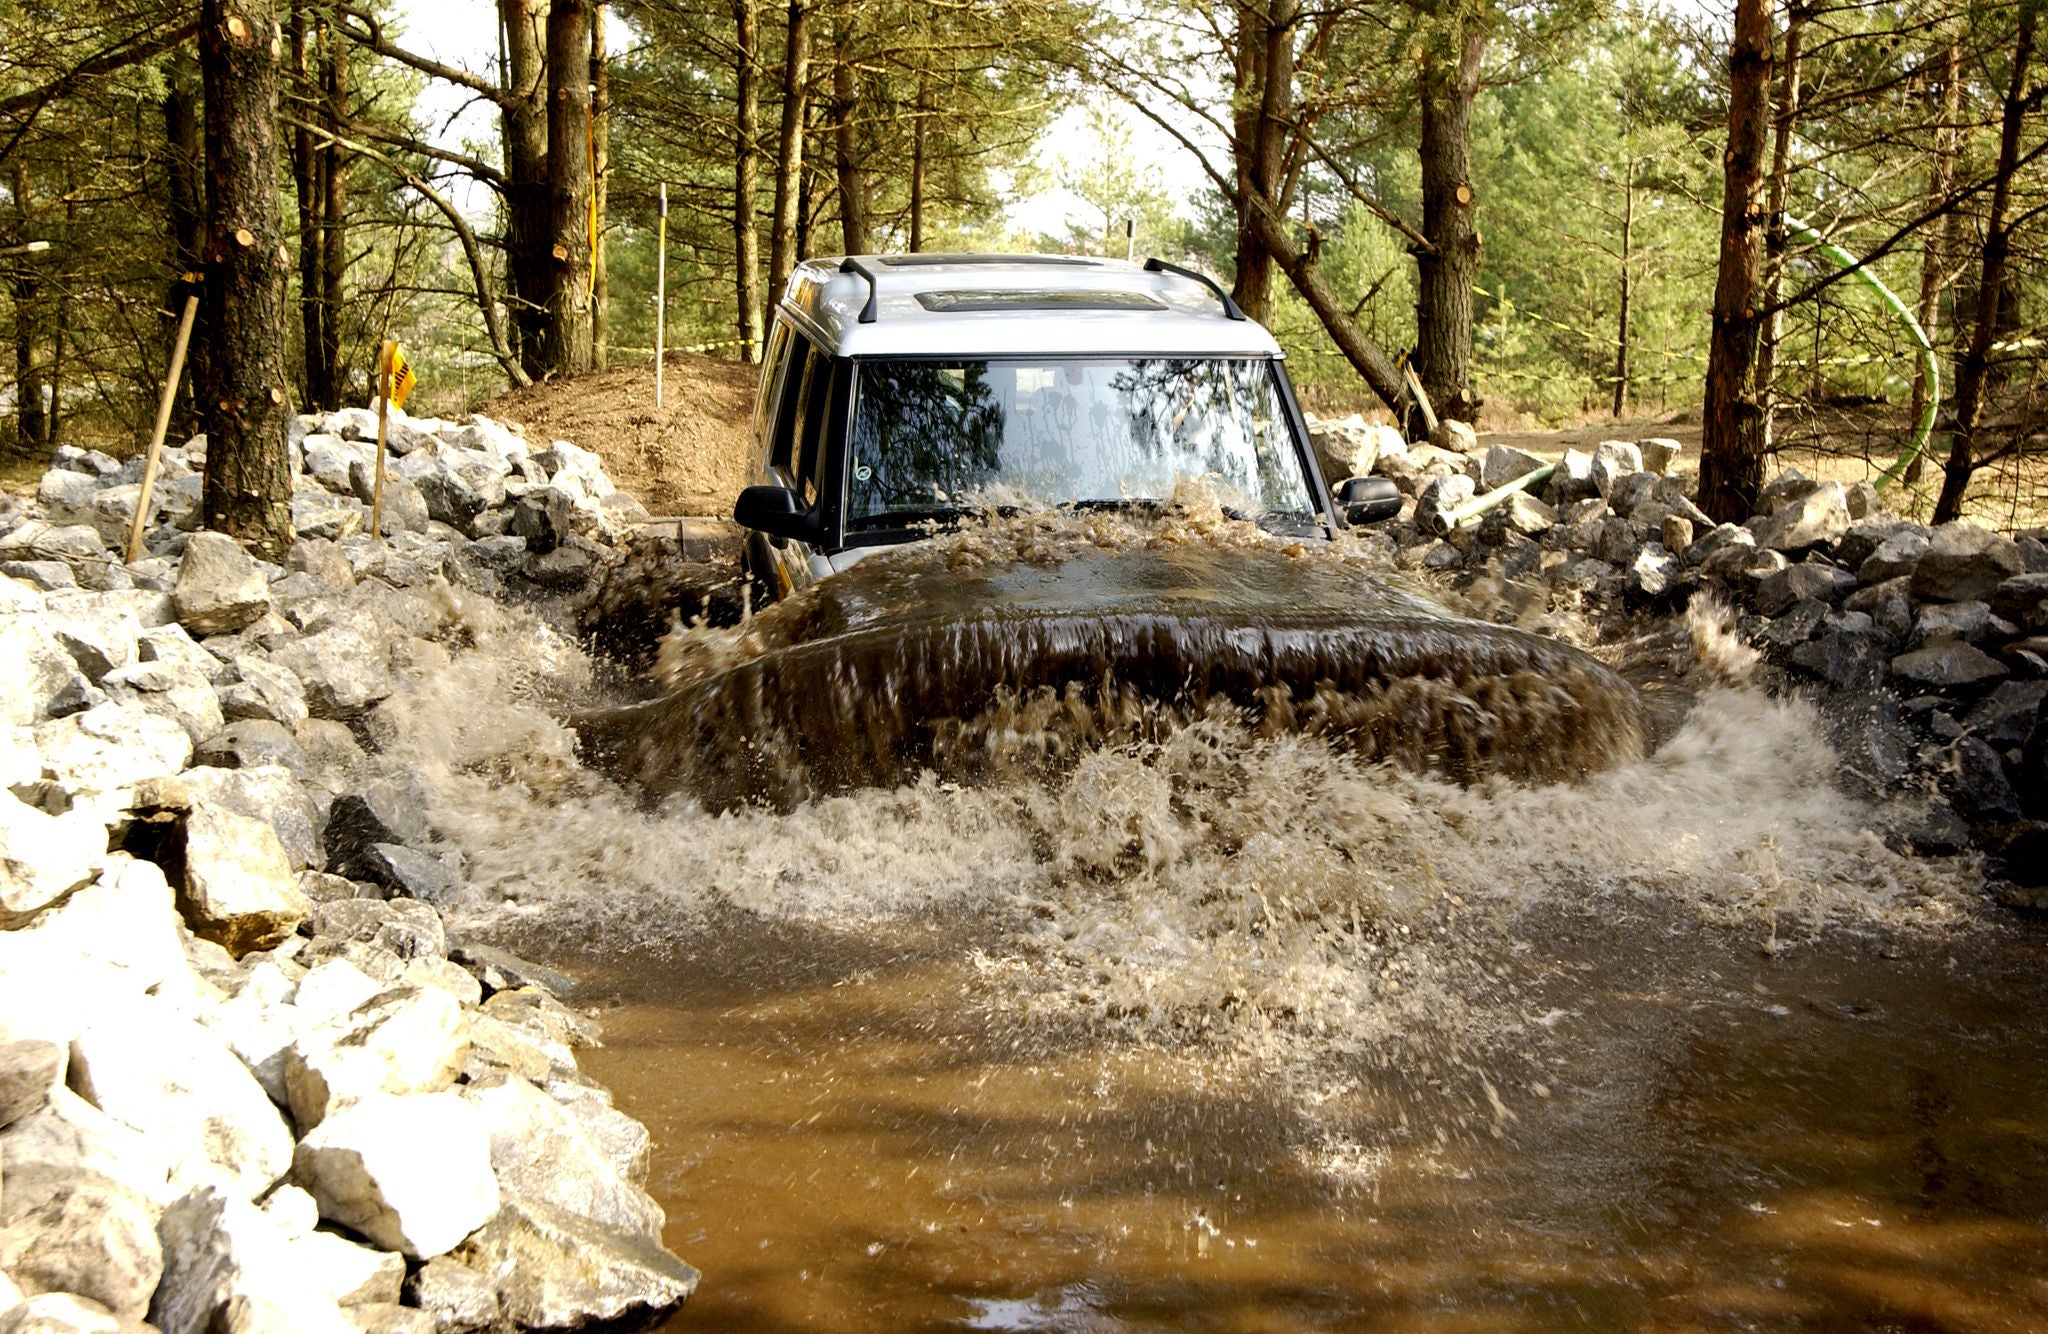 (imagem de veículo offroad passando em área alagada com lama)